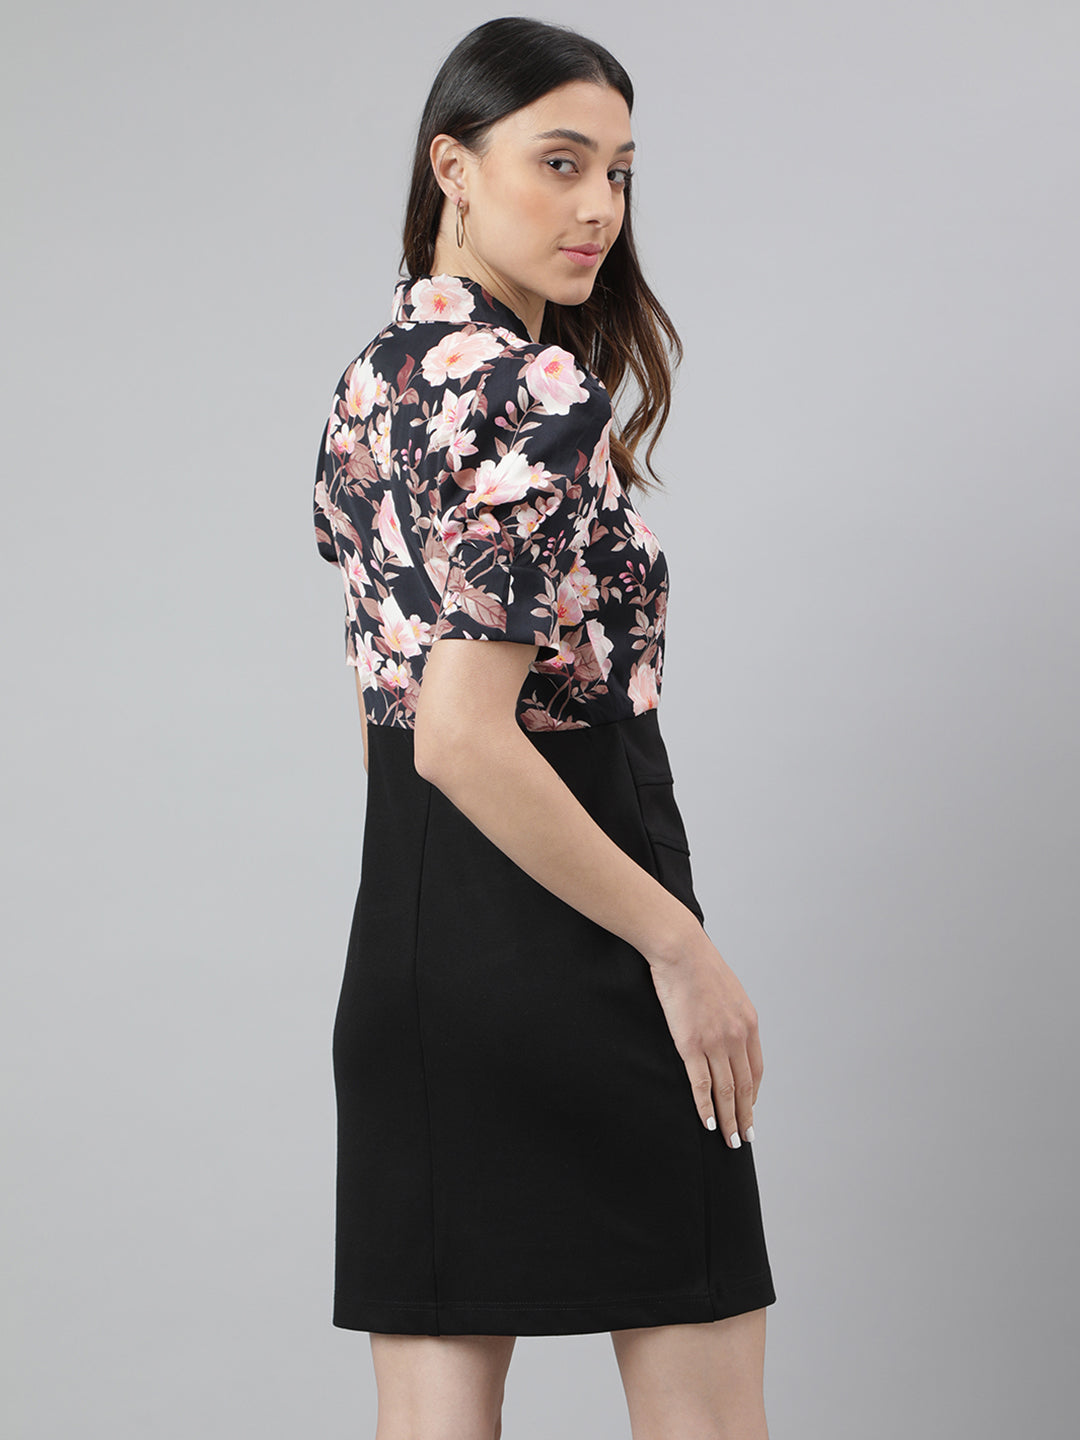 Black Half Sleeve Collar Neck Floral Print 2 Fir 1 Women Dress for Casual